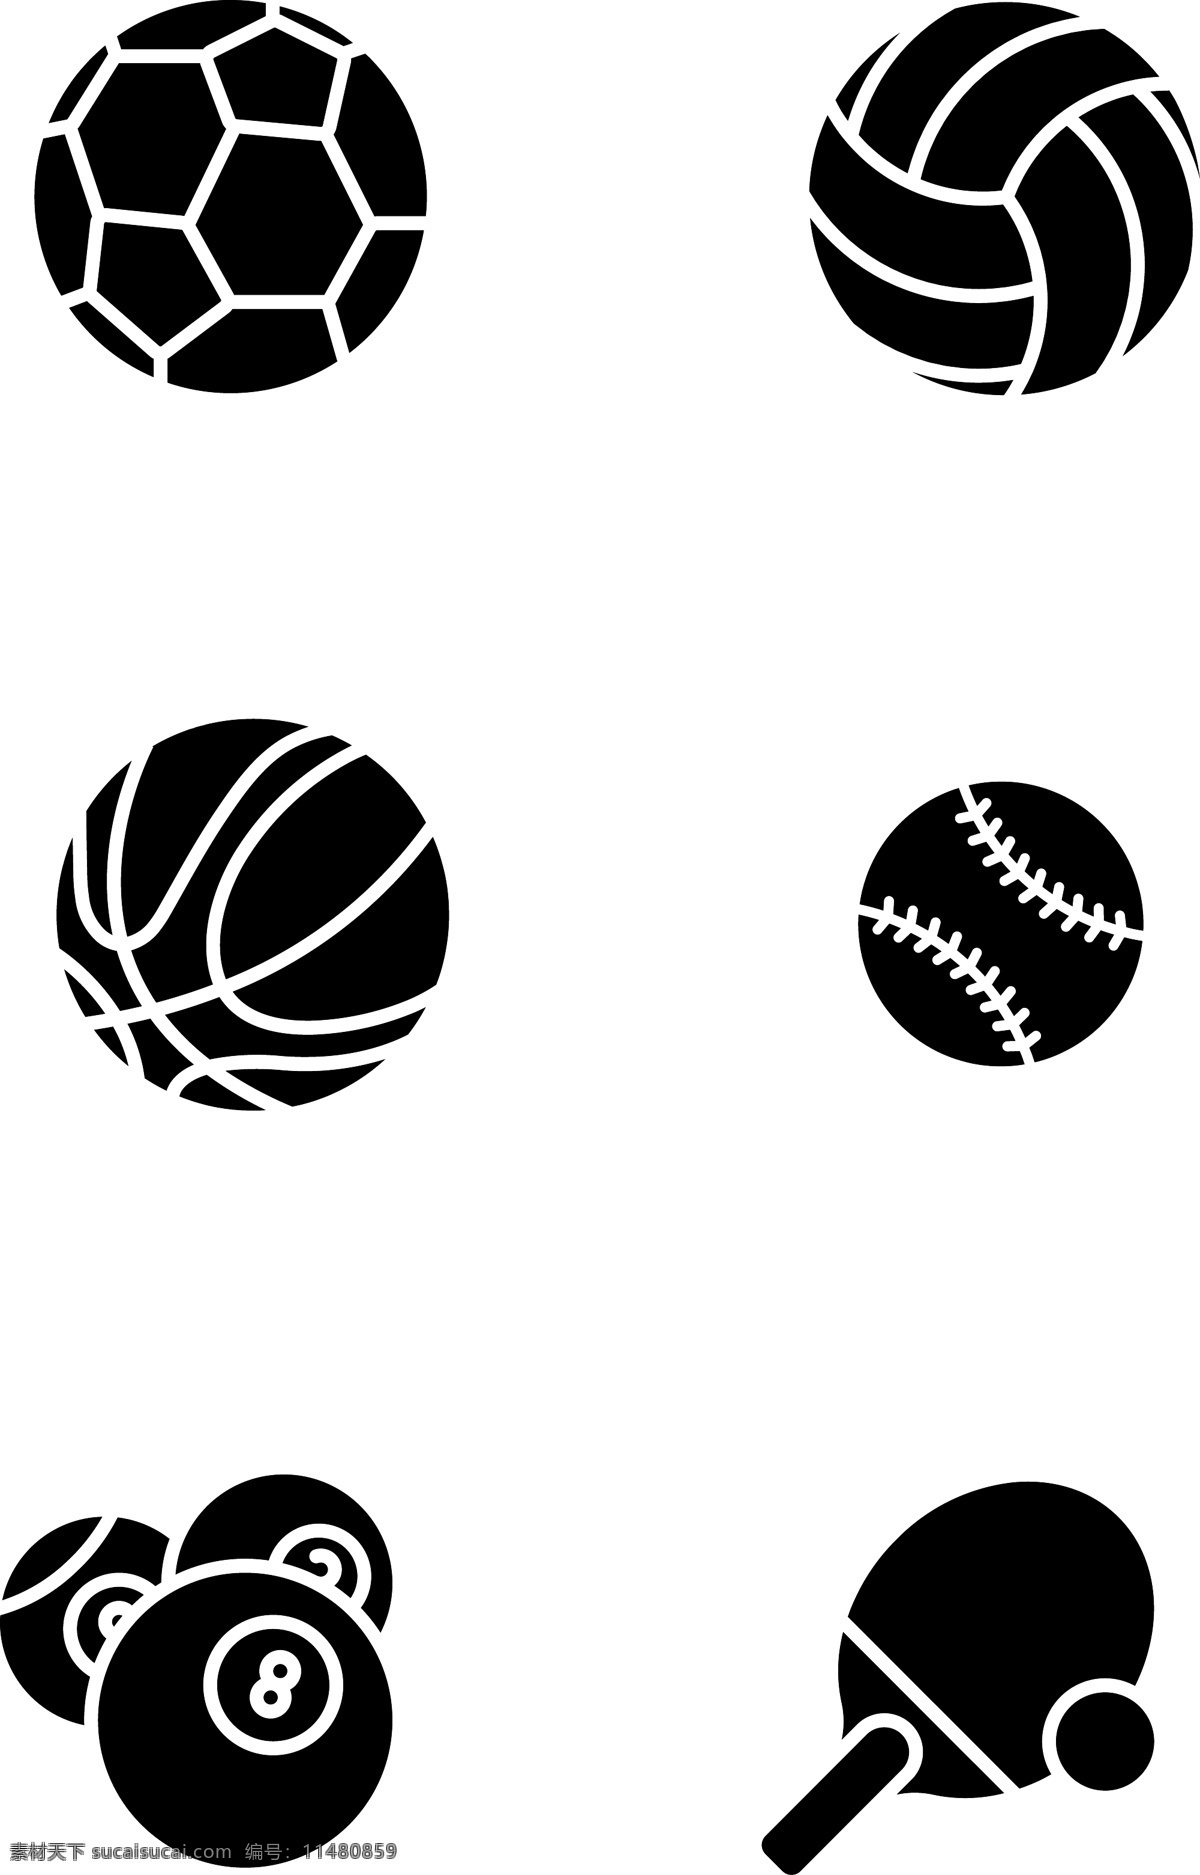 球类运动 体育 图标 球类 运动 足球 排球 篮球 棒球 乒乓球 桌球 黑白 简约 简单 免扣图标 矢量图